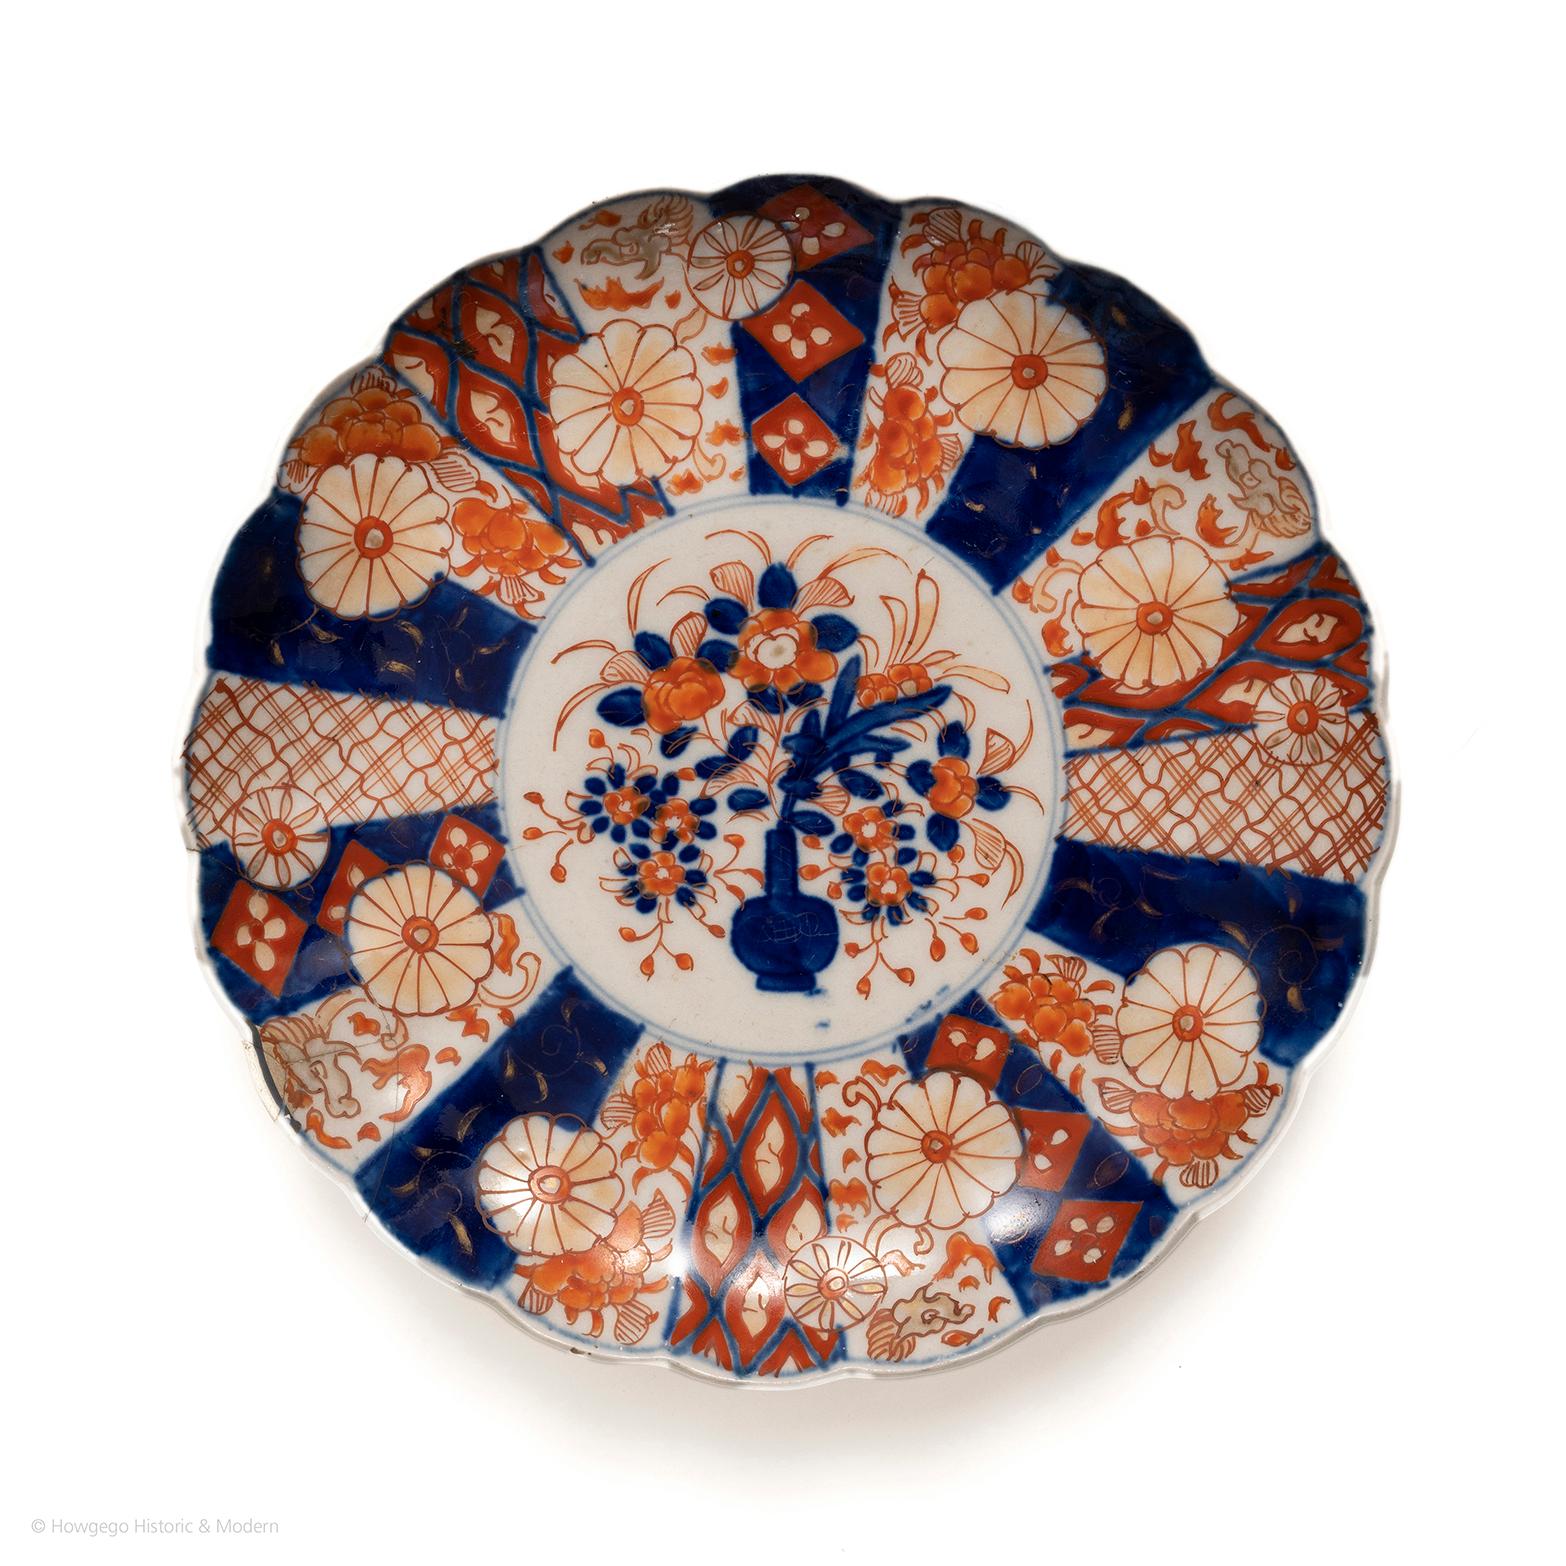 Charmante assiette lobée Imari du XVIIIe siècle, ornée d'un dragon. Magnifiquement peinte avec un vase et une profusion de fleurs entourées d'une bordure à double cercle. La bordure extérieure présente des vignettes élaborées avec des têtes de